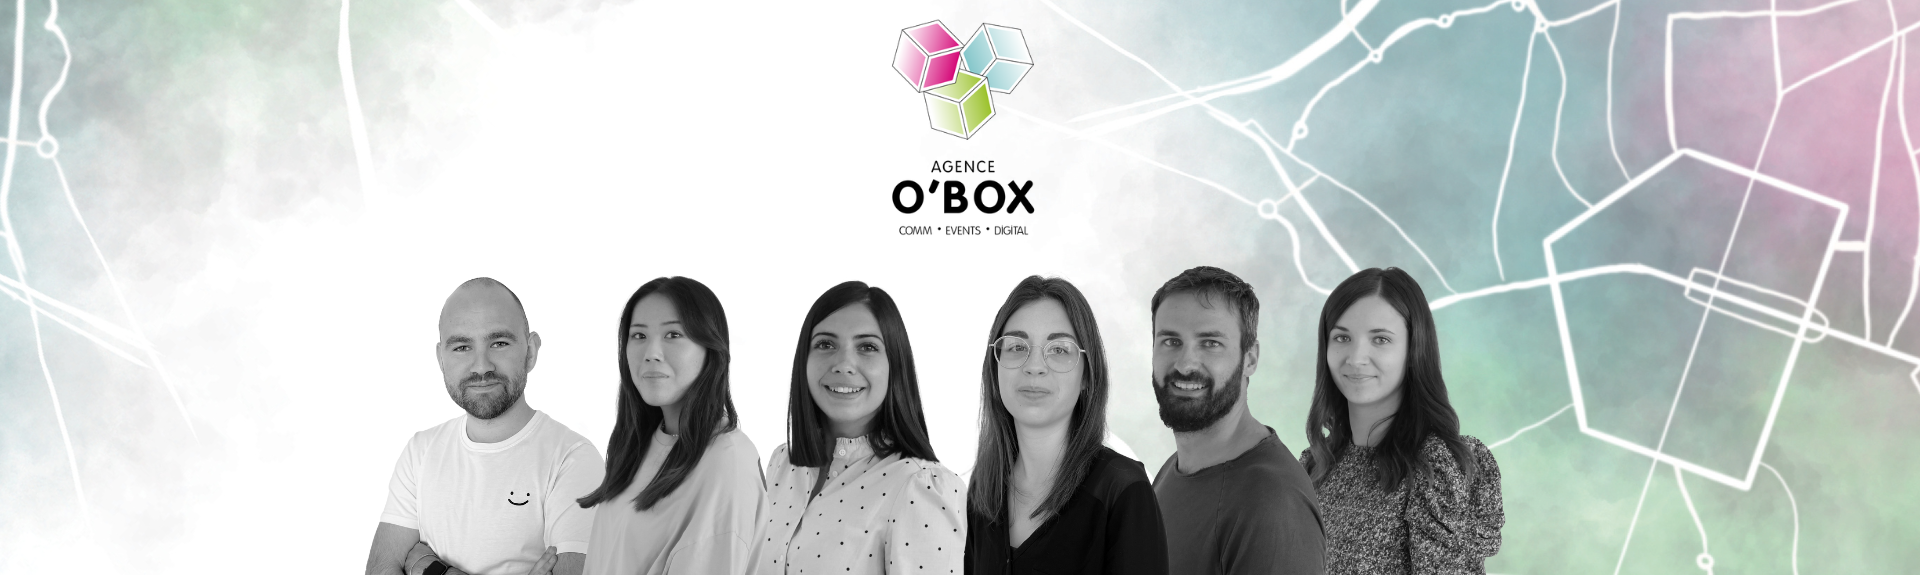 Agence O'Box - 1